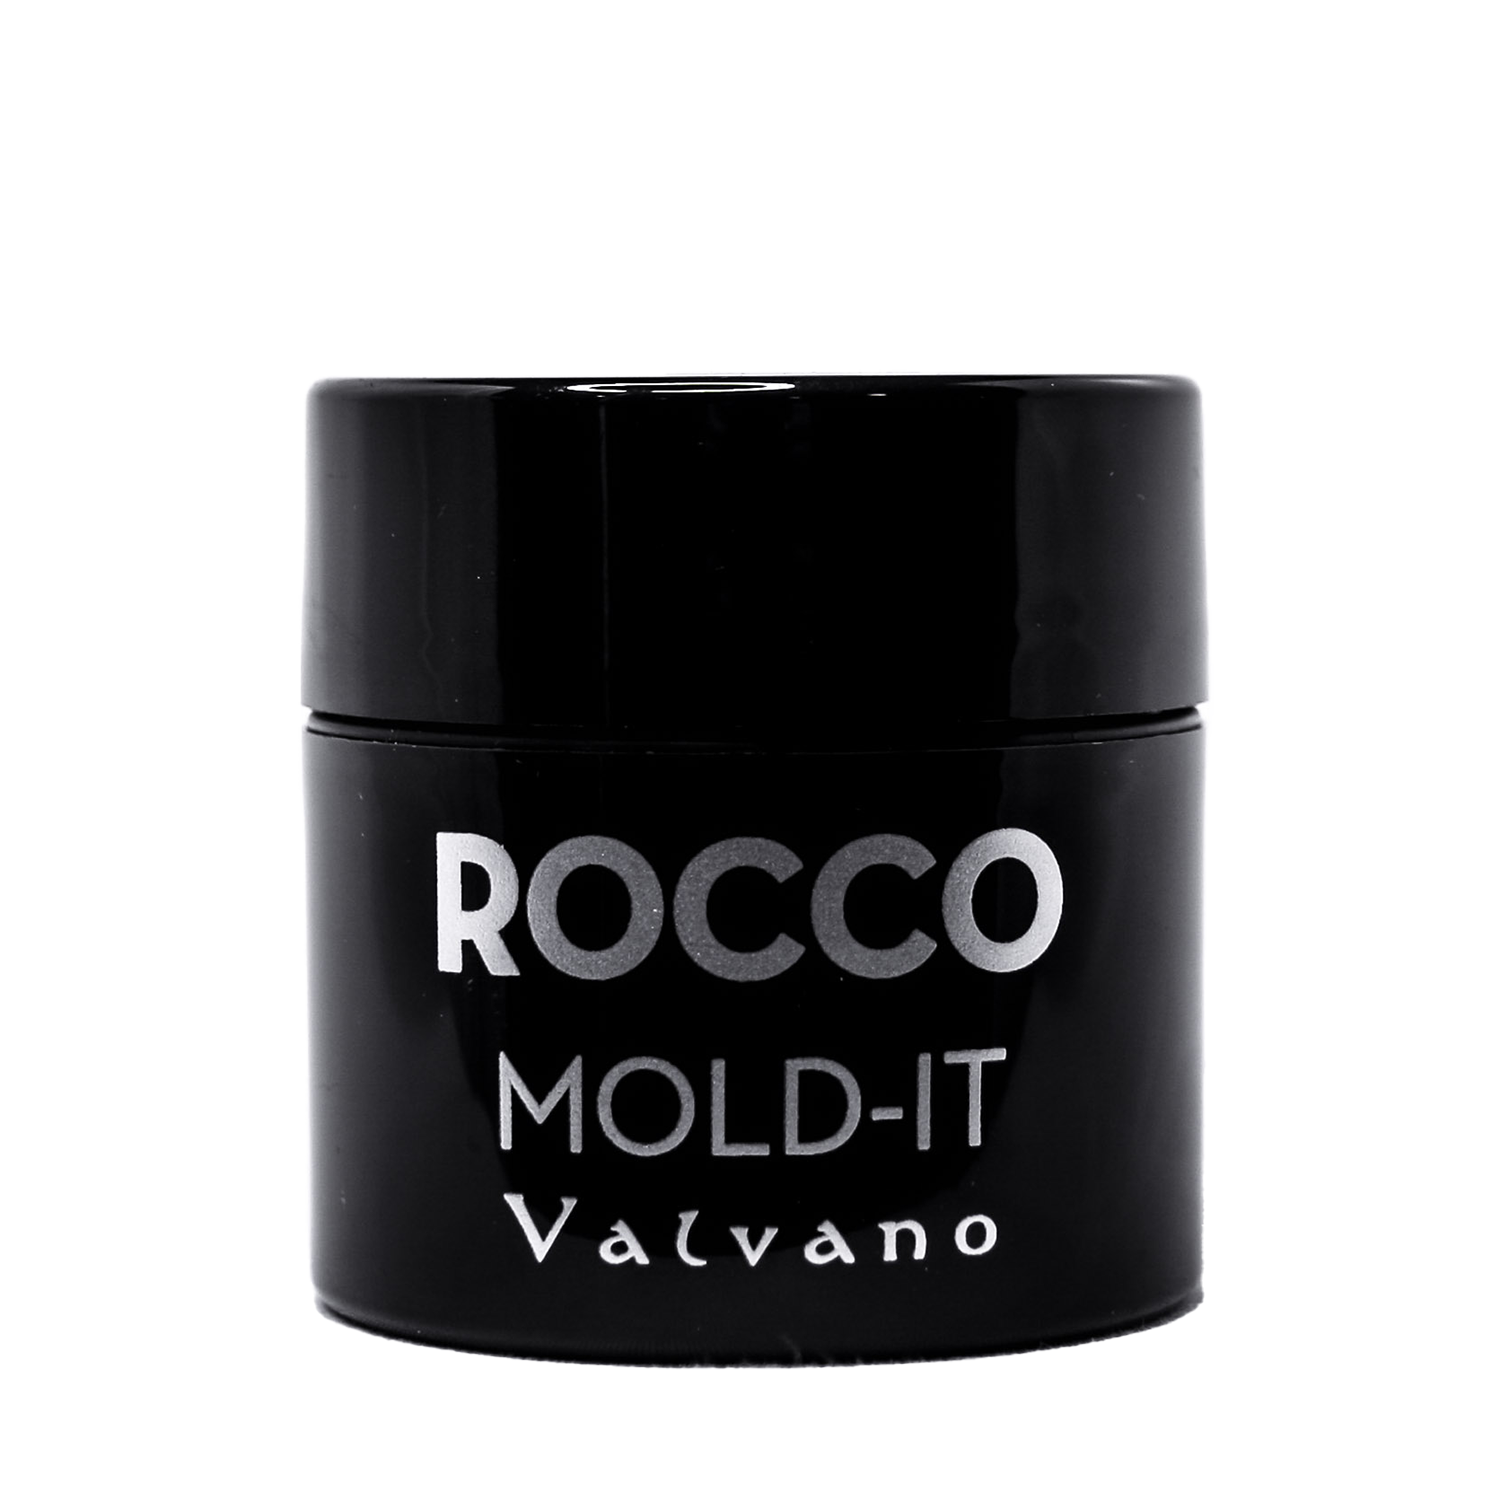 Valvano ROCCO MOLD-IT - Creata Beauty - Professional Beauty Products